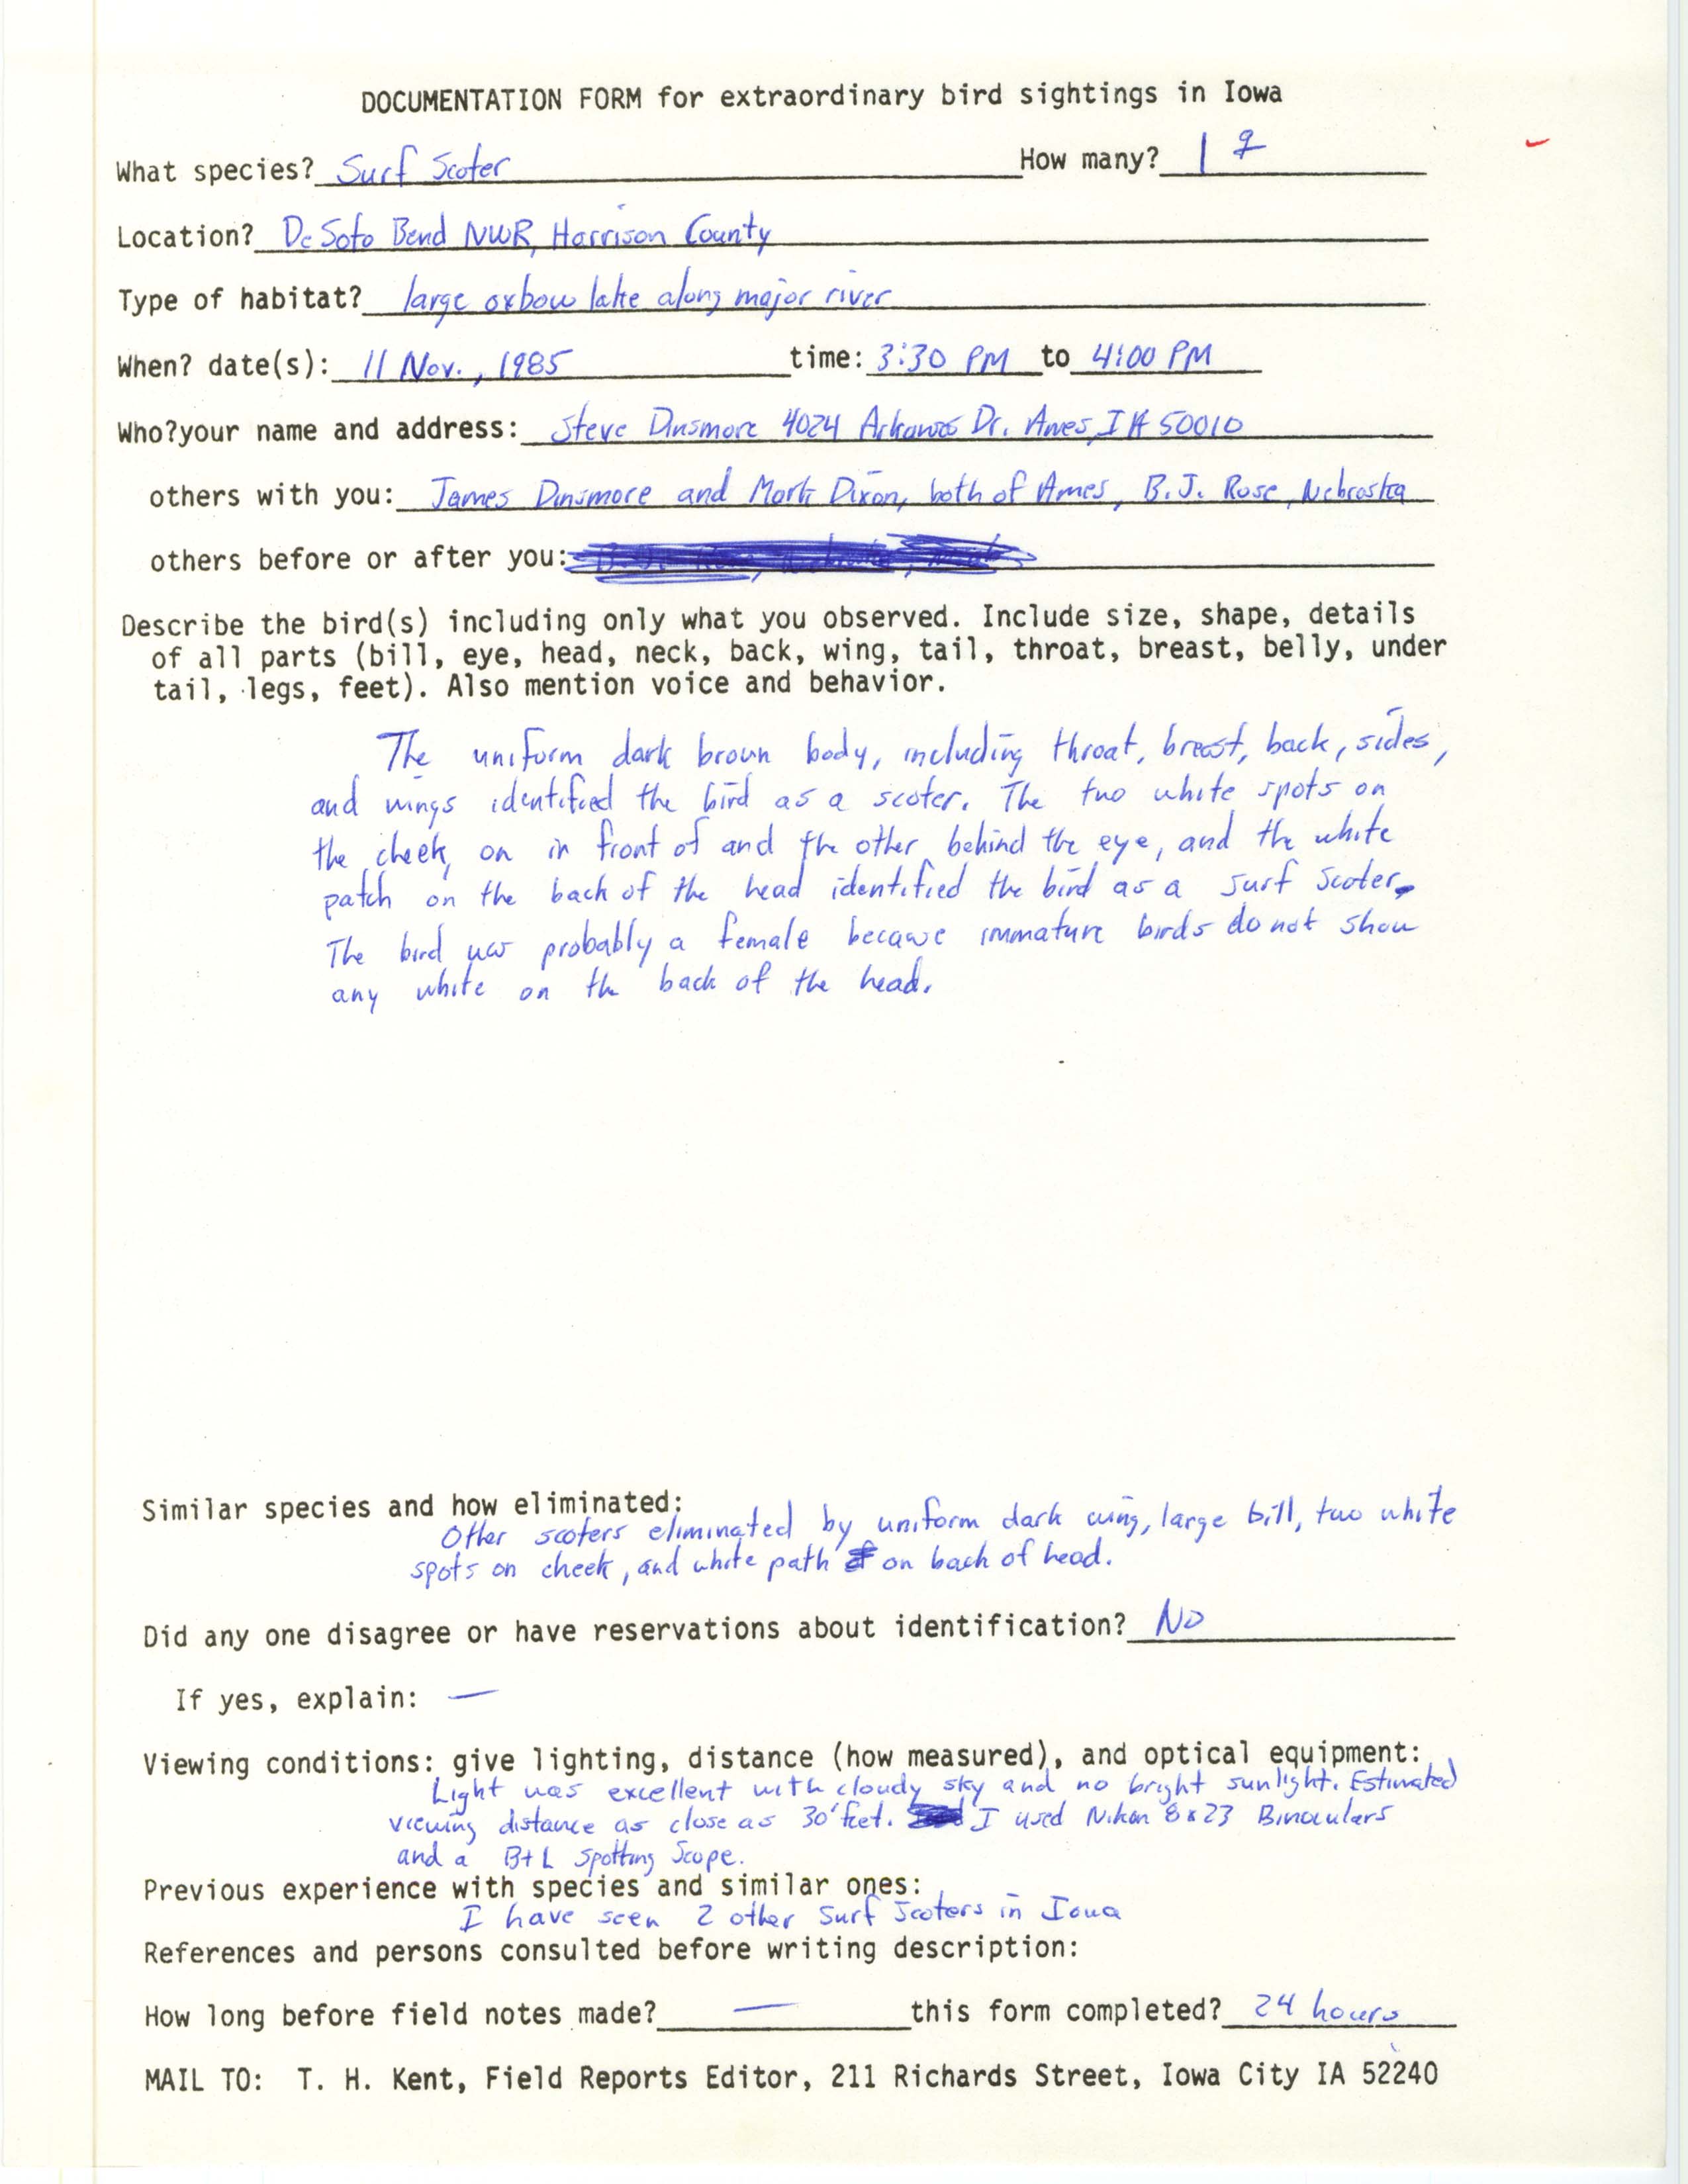 Rare bird documentation form for Surf Scoter at DeSoto Bend National Wildlife Refuge, 1985